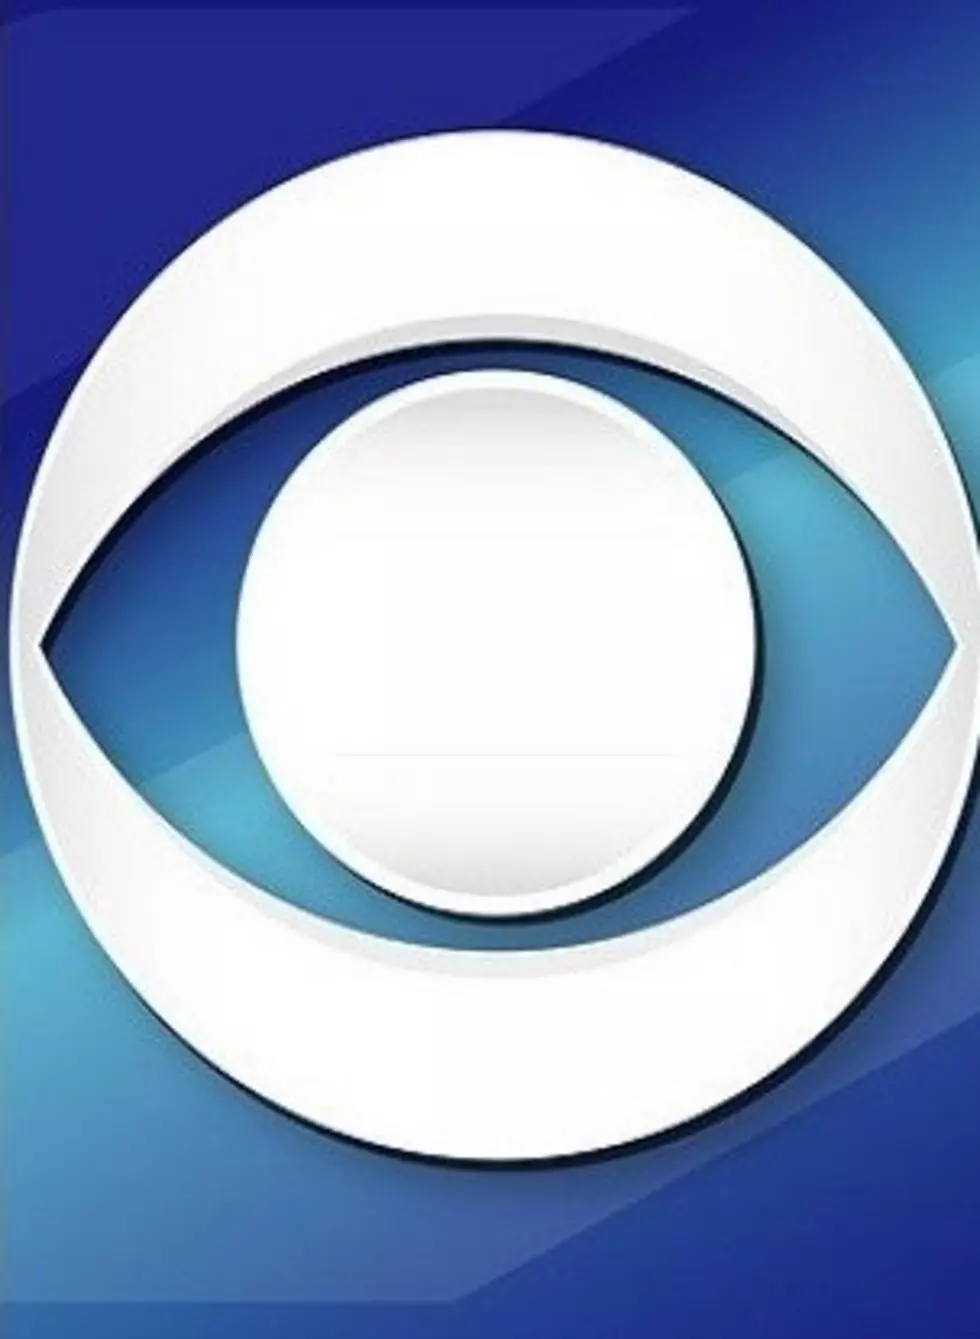 CBS, Viacom To Reunite As Media Giants Bulk Up For Streaming